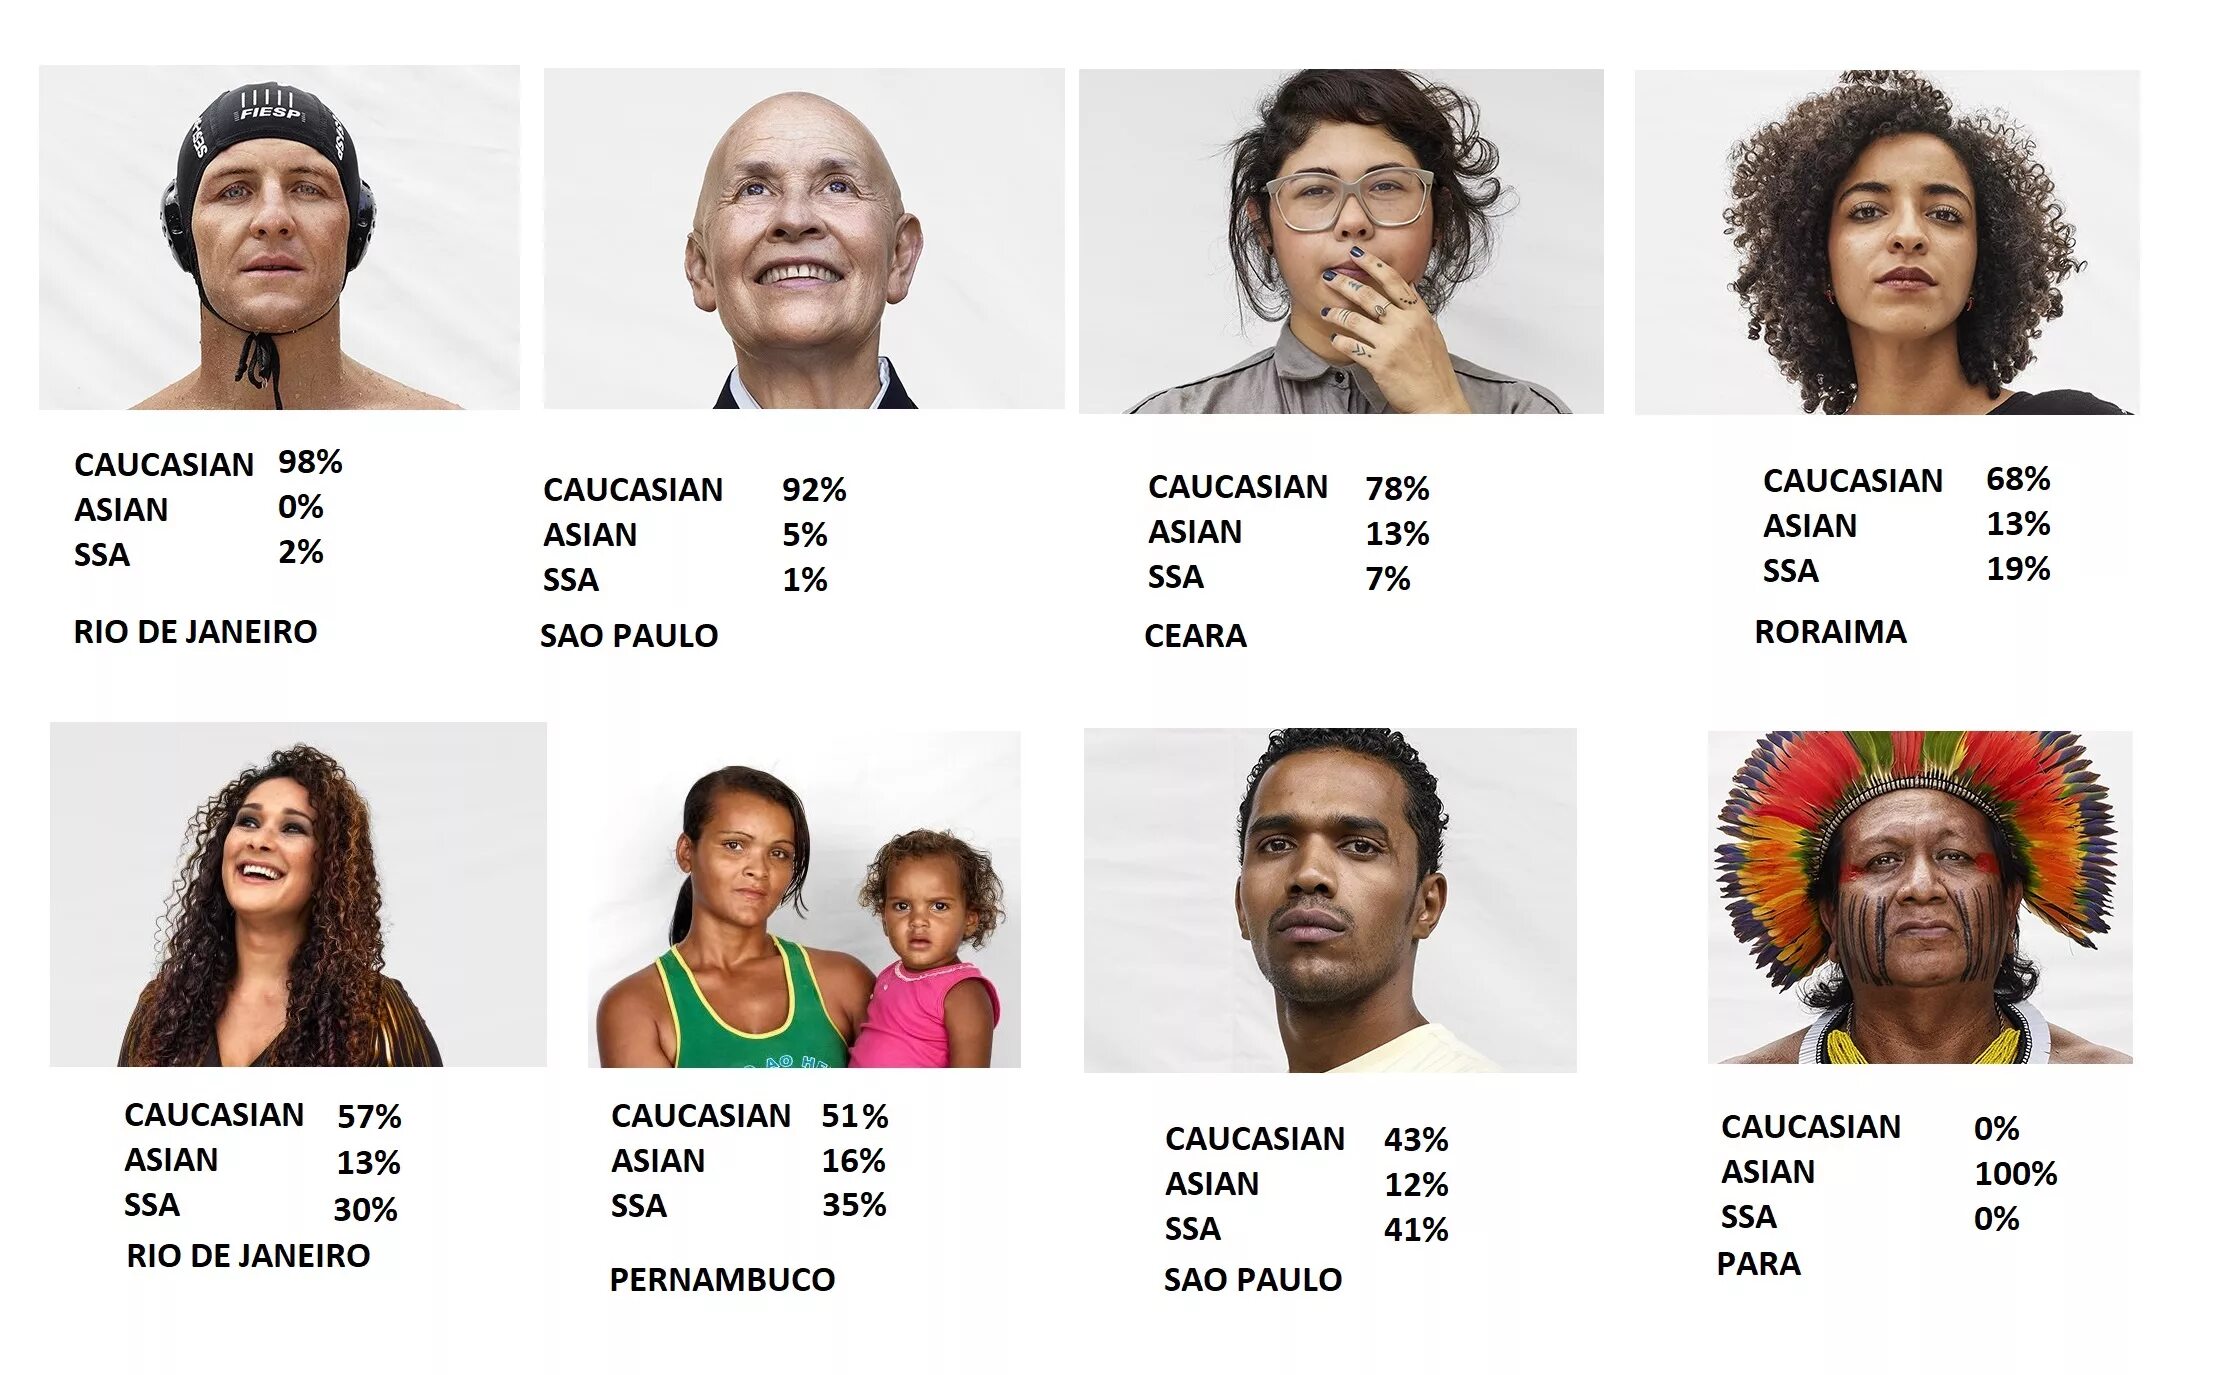 Бразильцы внешность. Типичная бразильская внешность. Бразильцы раса. Цвет кожи бразильцев.